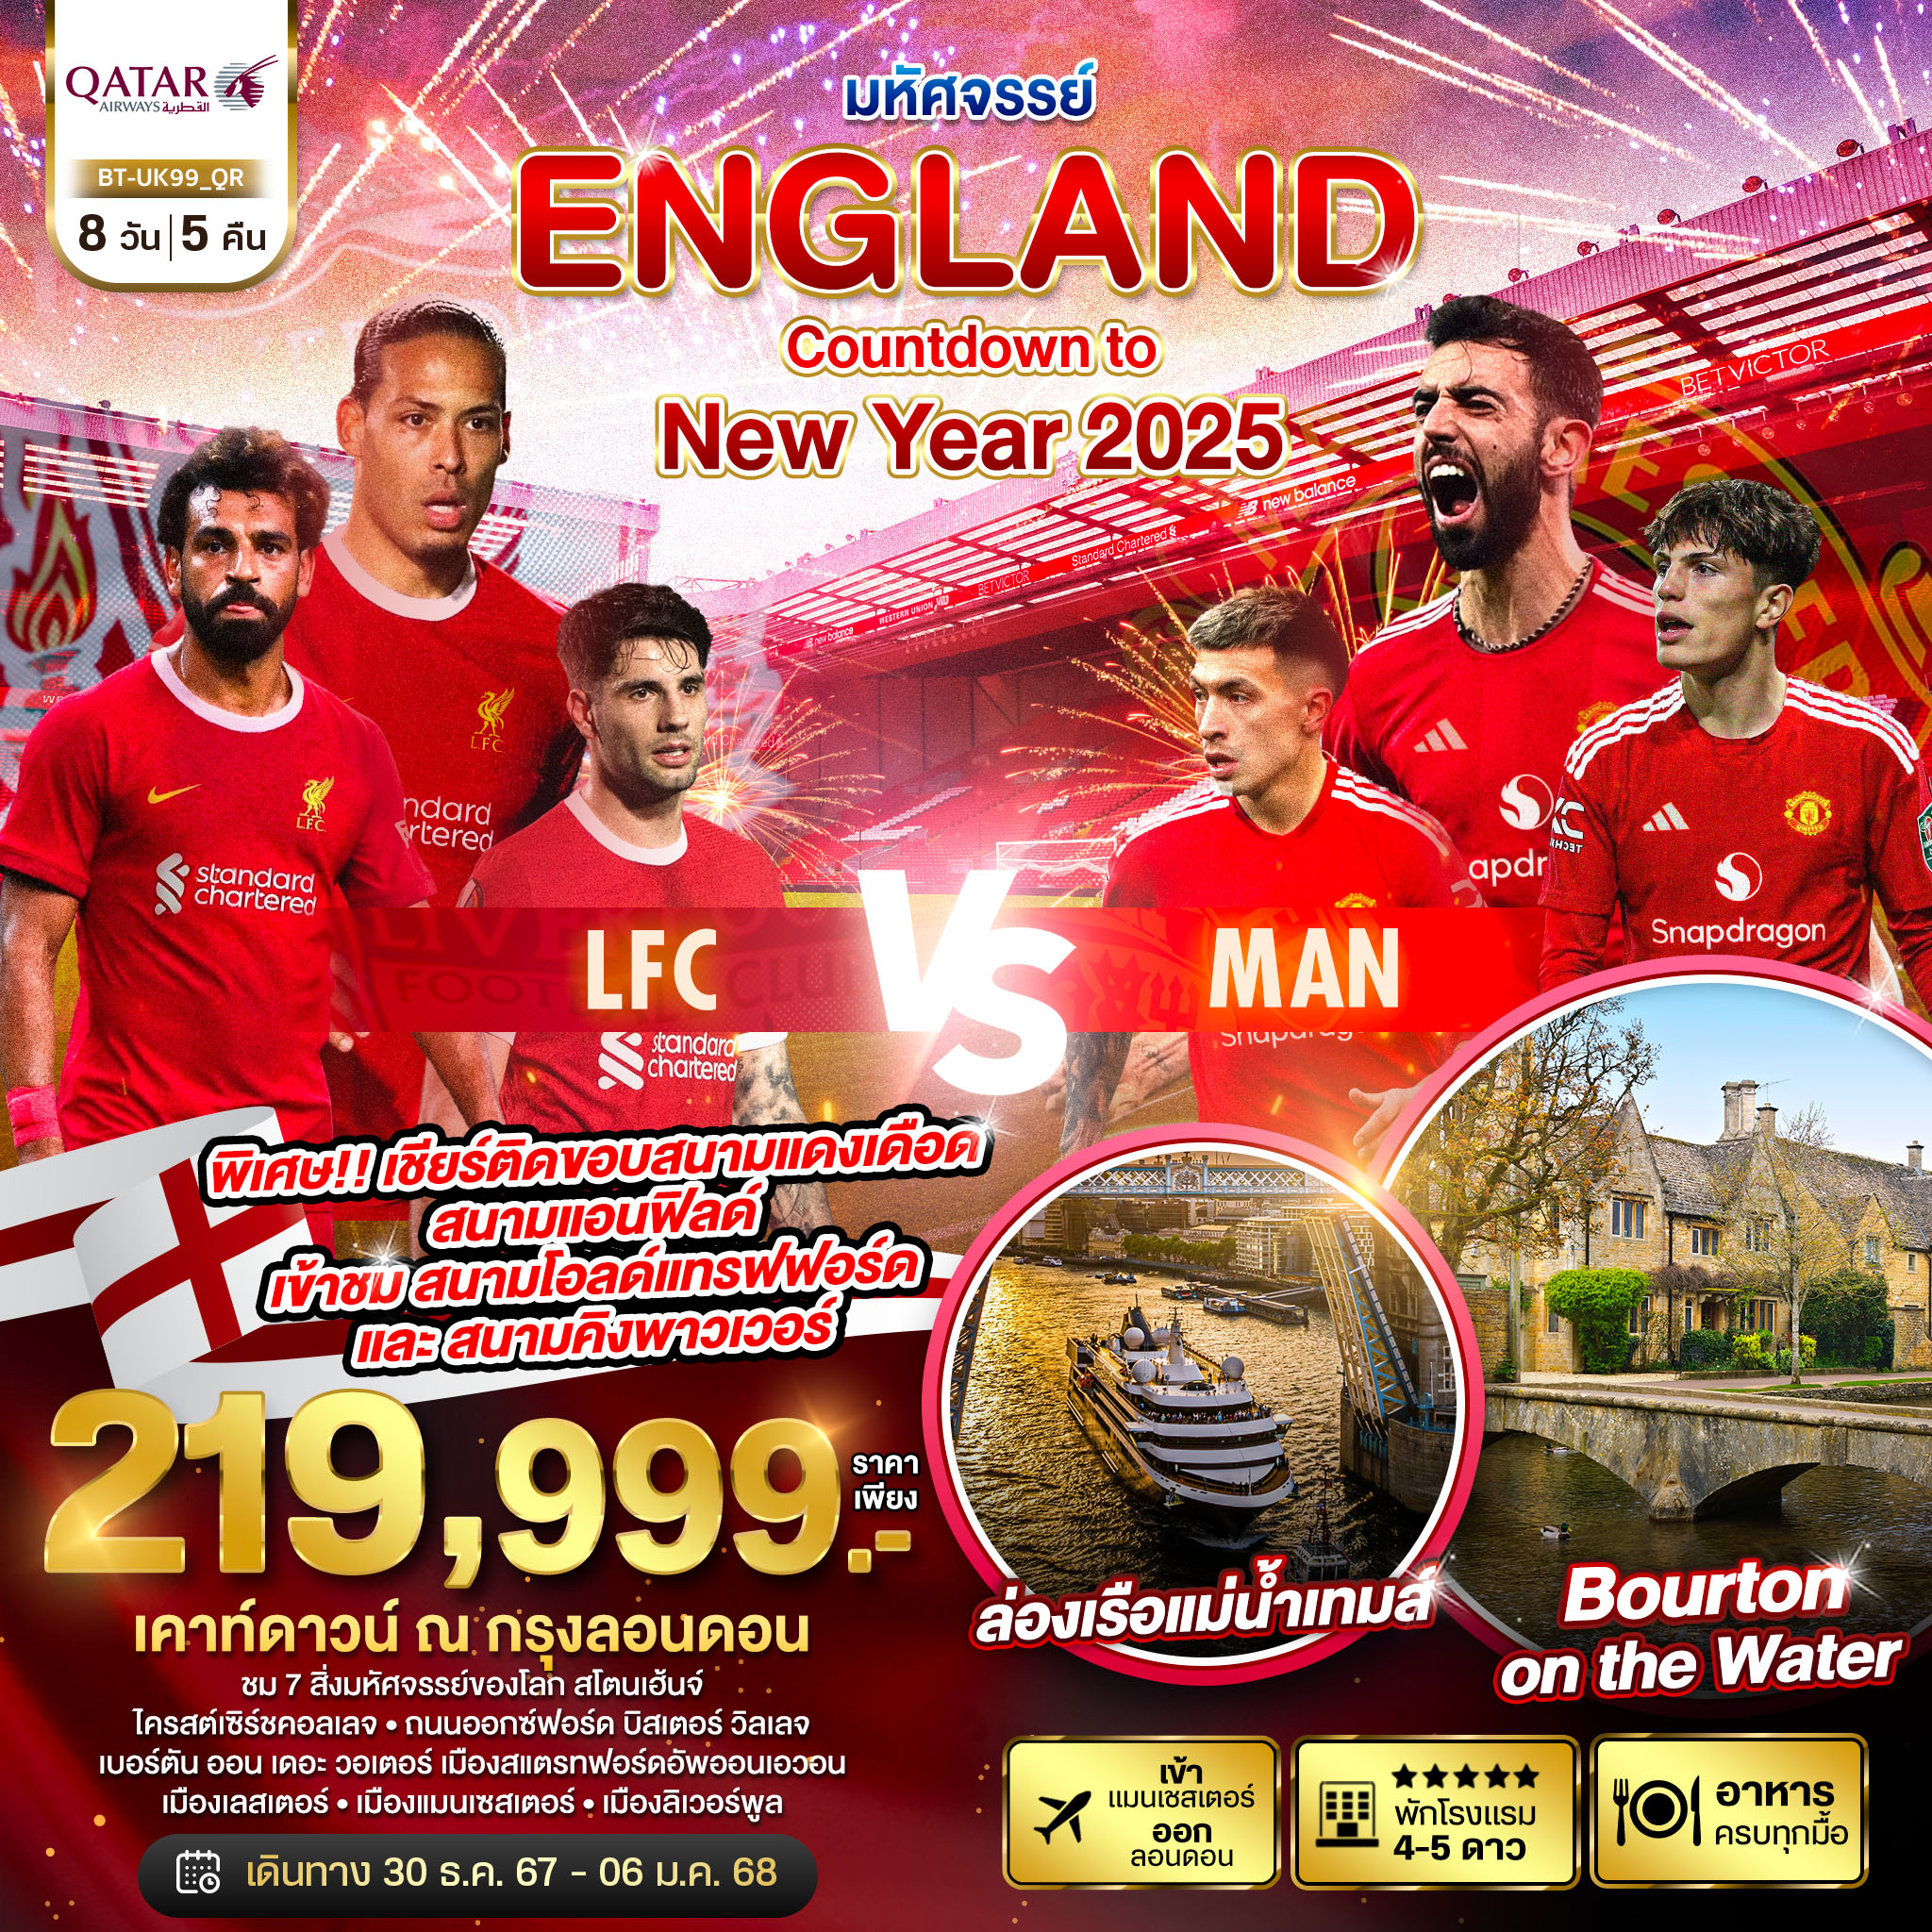 ทัวร์อังกฤษ ฉลองปีใหม่ 2025 ชมการแข่งขันฟุตบอลอังกฤษ ศึกแดงเดือด LFC vs MAN 8 วัน 5 คืน